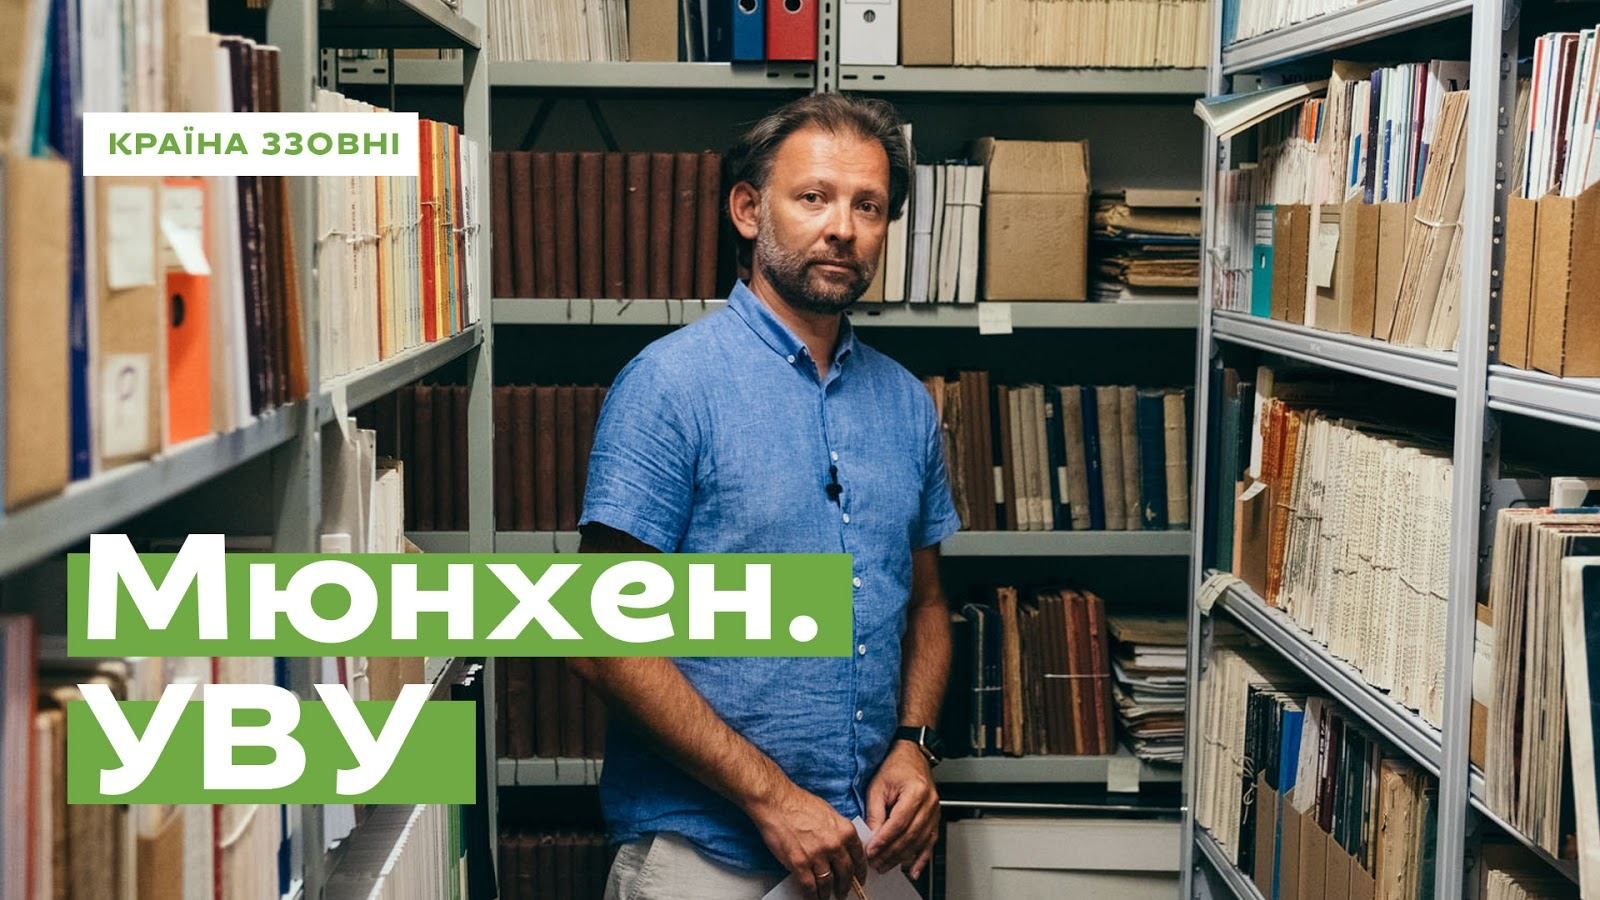 Майже 100 років історії: чим особливий Український вільний університет